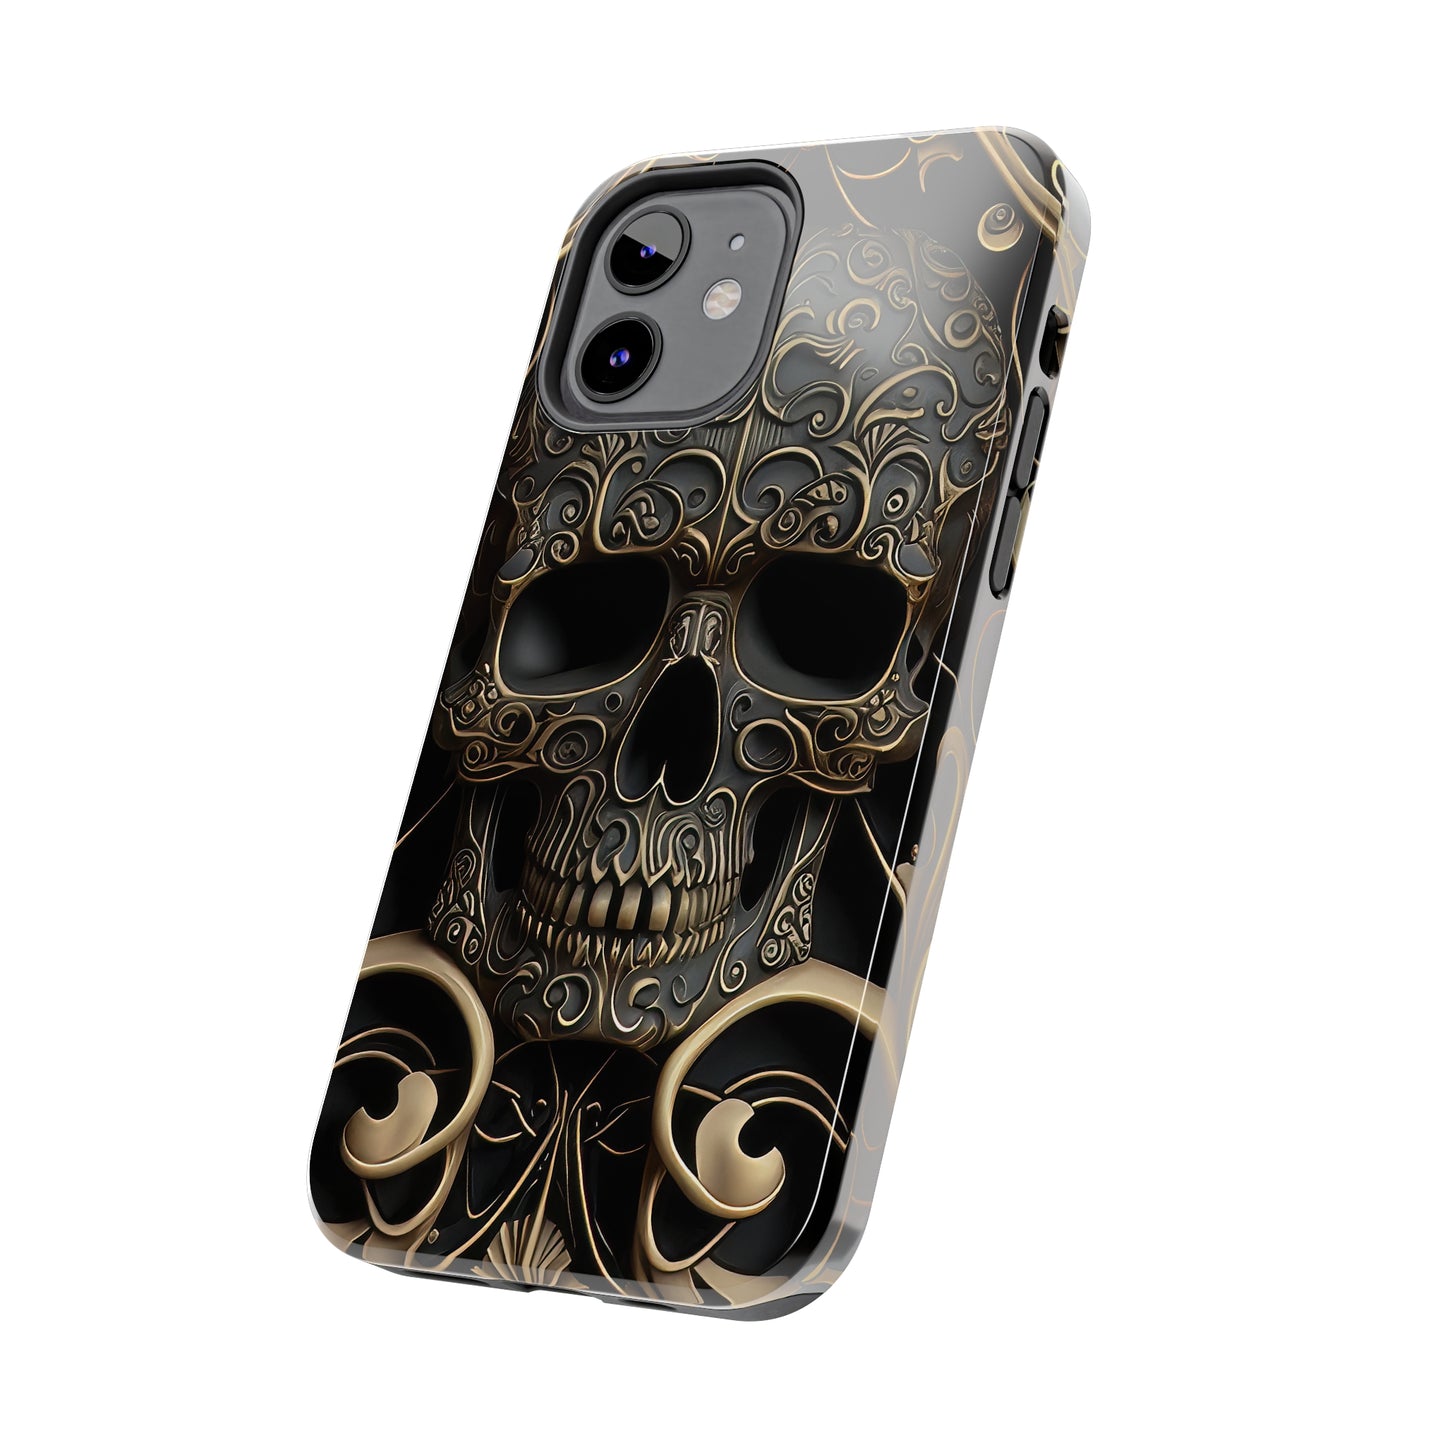 Metallic Chrome Skulls and classic Designed 2 Tough Phone Cases